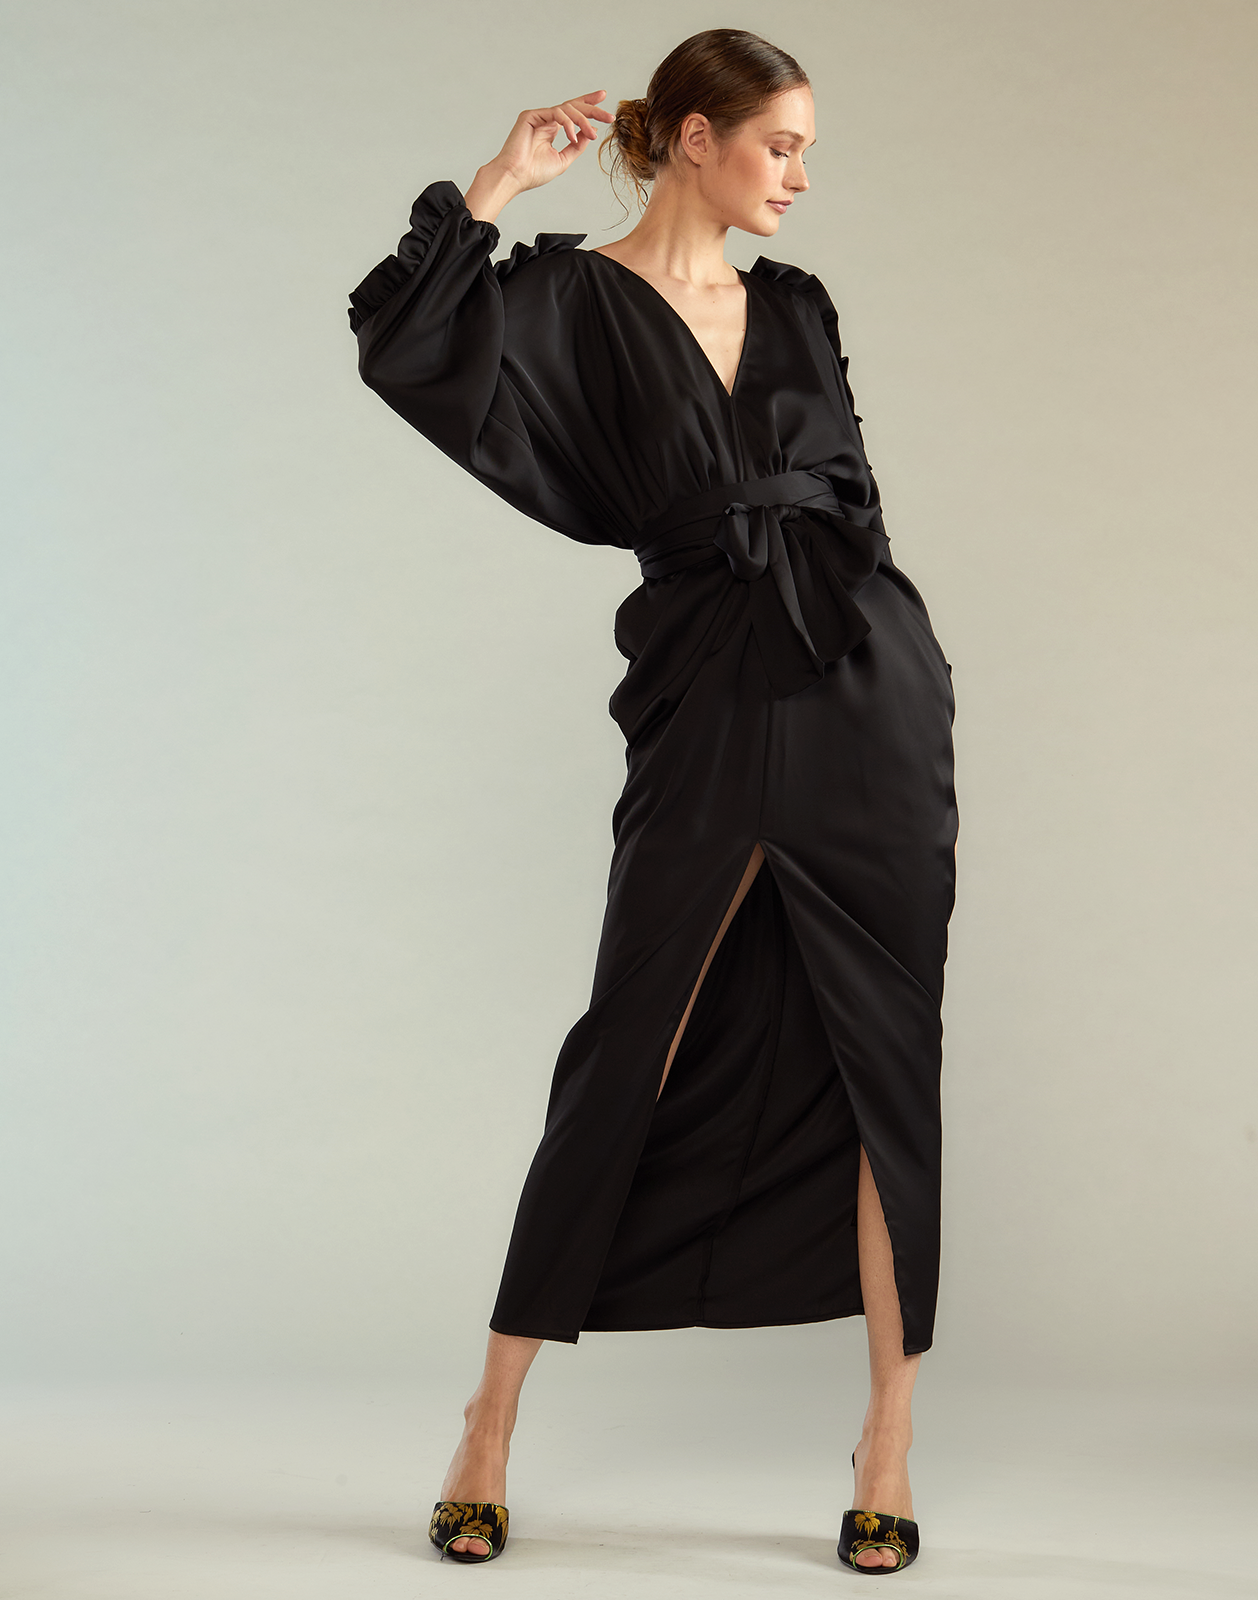 Dolman Sleeve Dance Dress – Cynthia Rowley